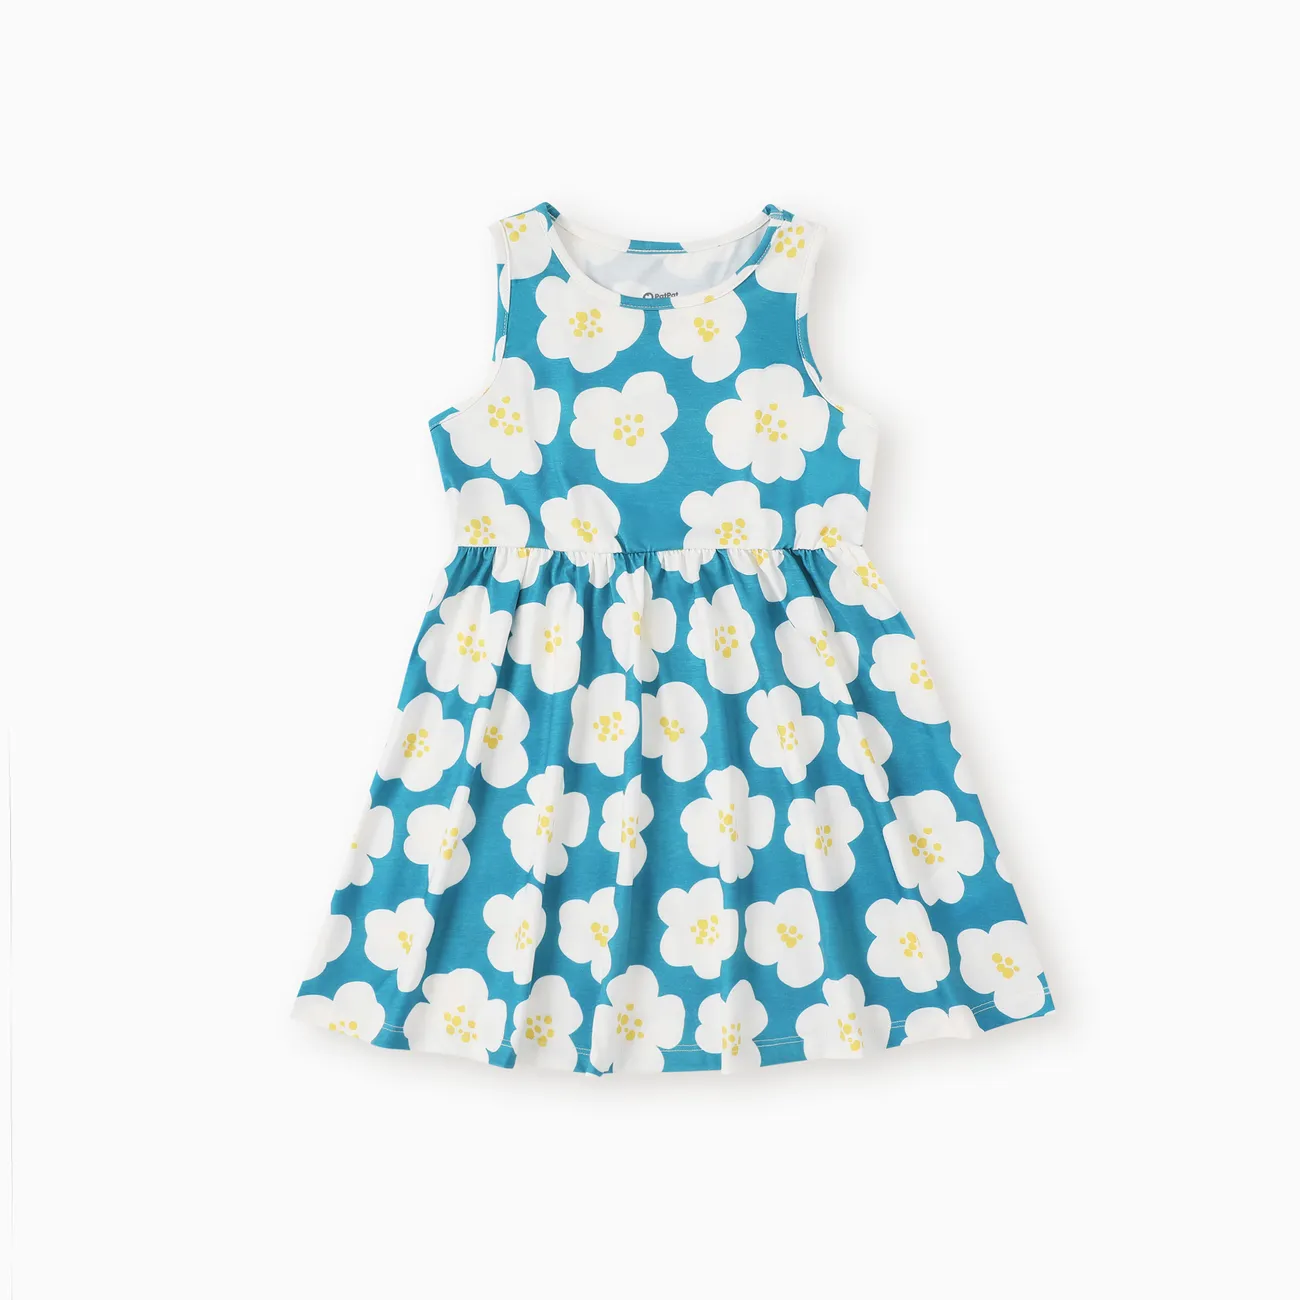 Ärmelloses Kleid mit Herzdruck/Tupfen für Kleinkinder/Kindermädchen grün big image 1